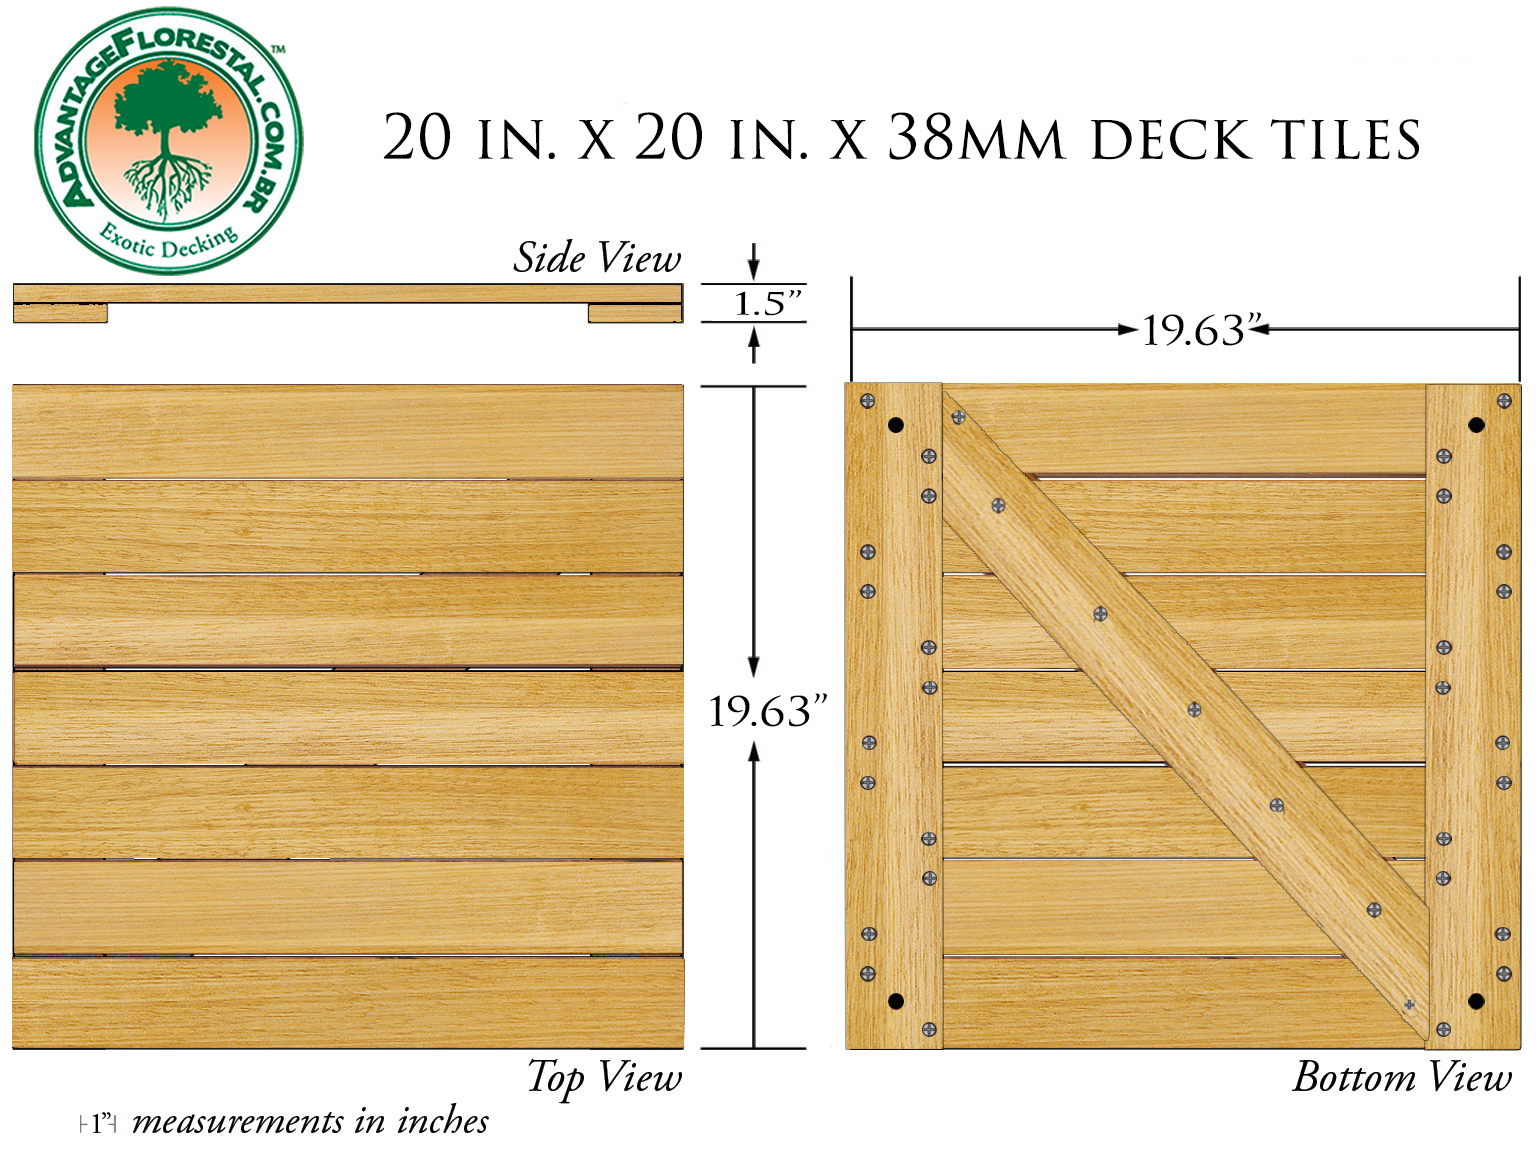 Tauari Deck Tile 20 in. x 20 in. x 38mm